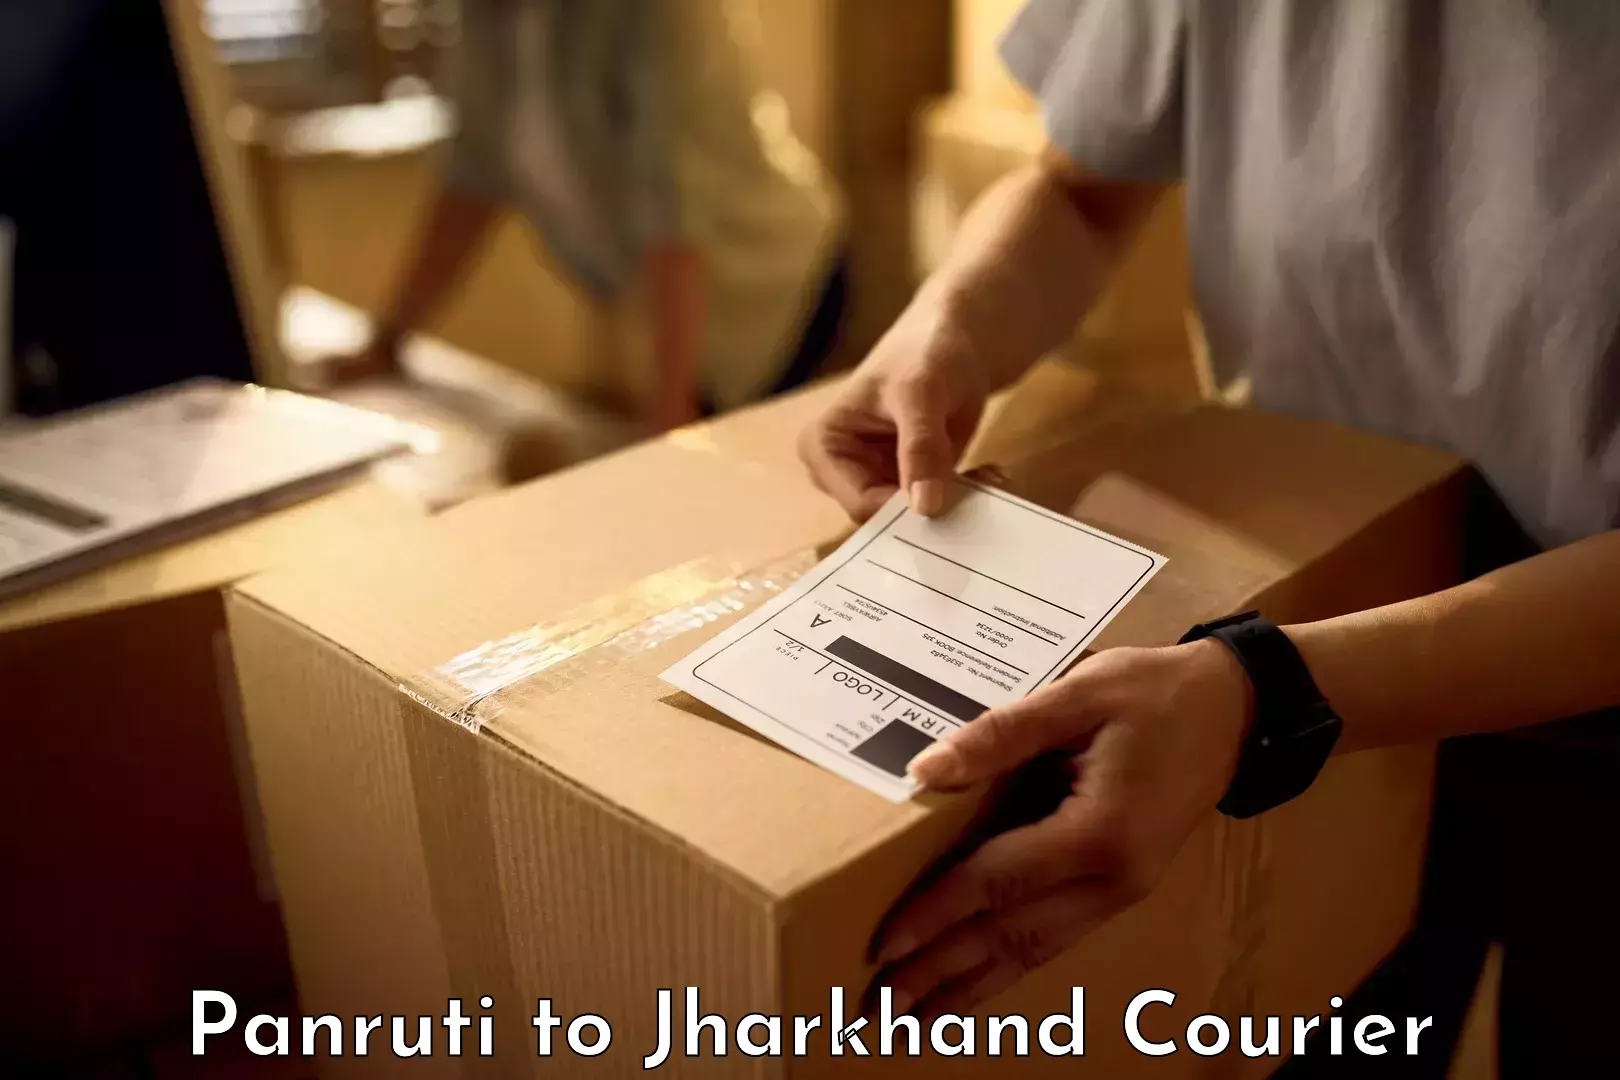 Baggage transport innovation Panruti to Jharkhand